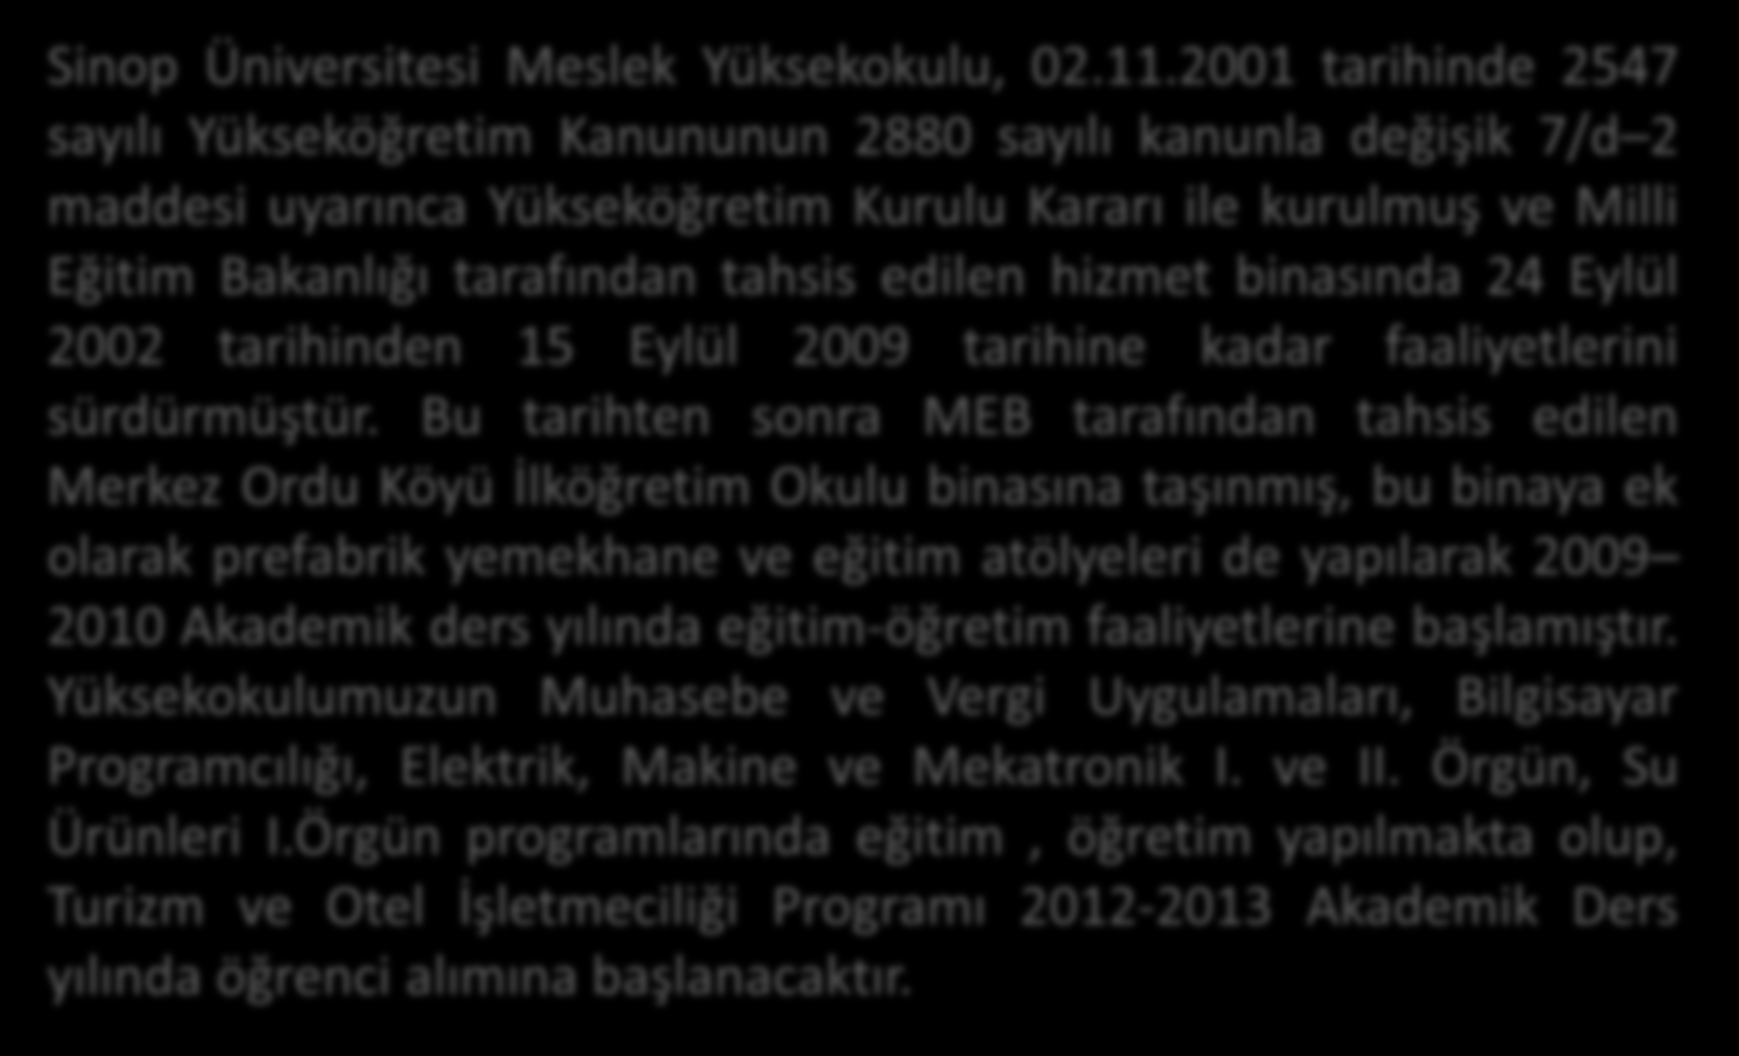 GENEL BİLGİLER Sinop Üniversitesi Meslek Yüksekokulu, 02.11.